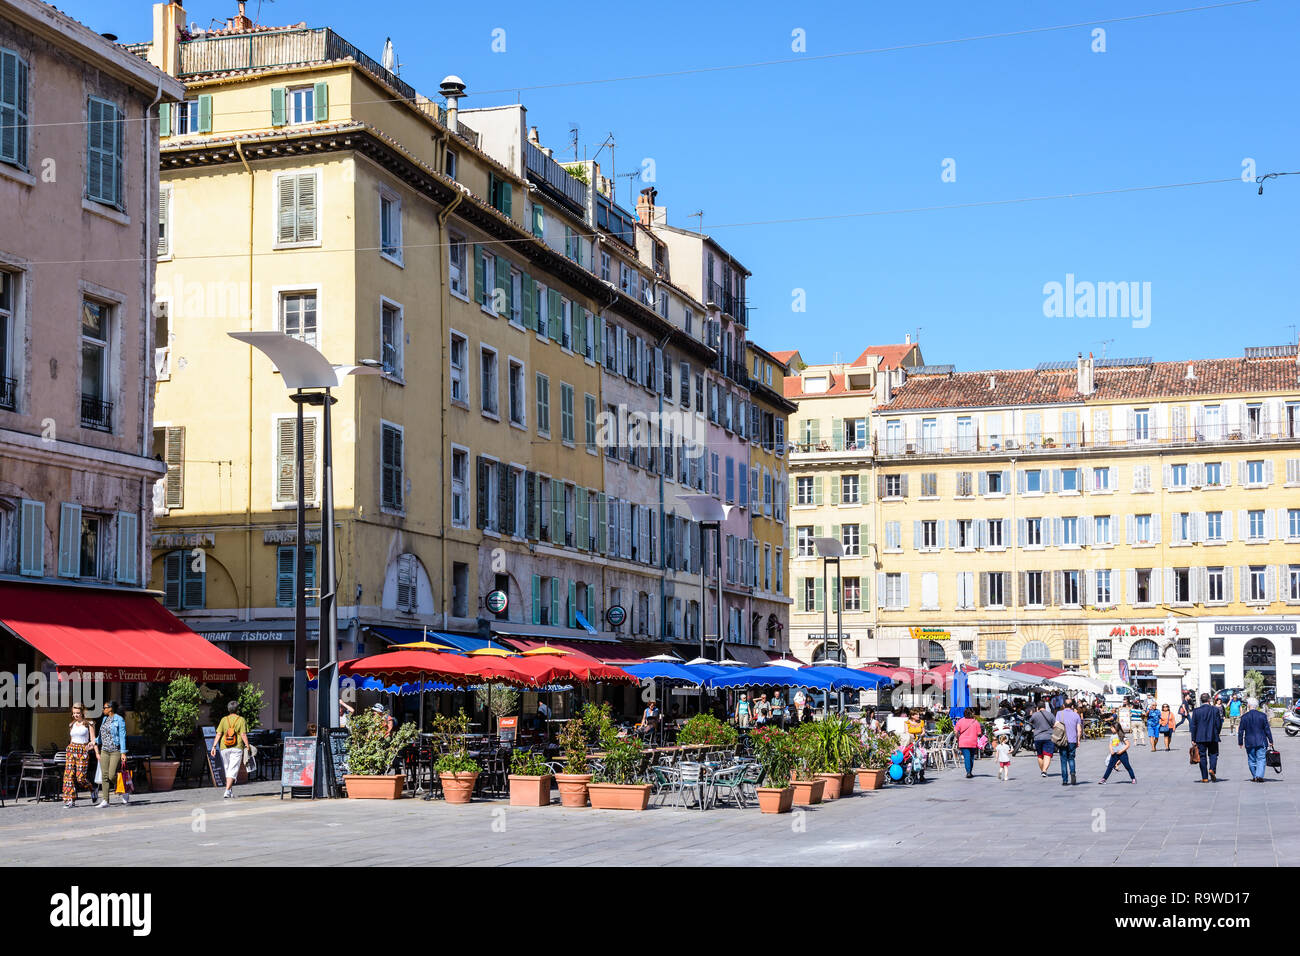 Cours Estienne d'Orves est une grande place piétonne à proximité du Vieux Port de Marseille, France, avec restaurants, bars et terrasses. Banque D'Images